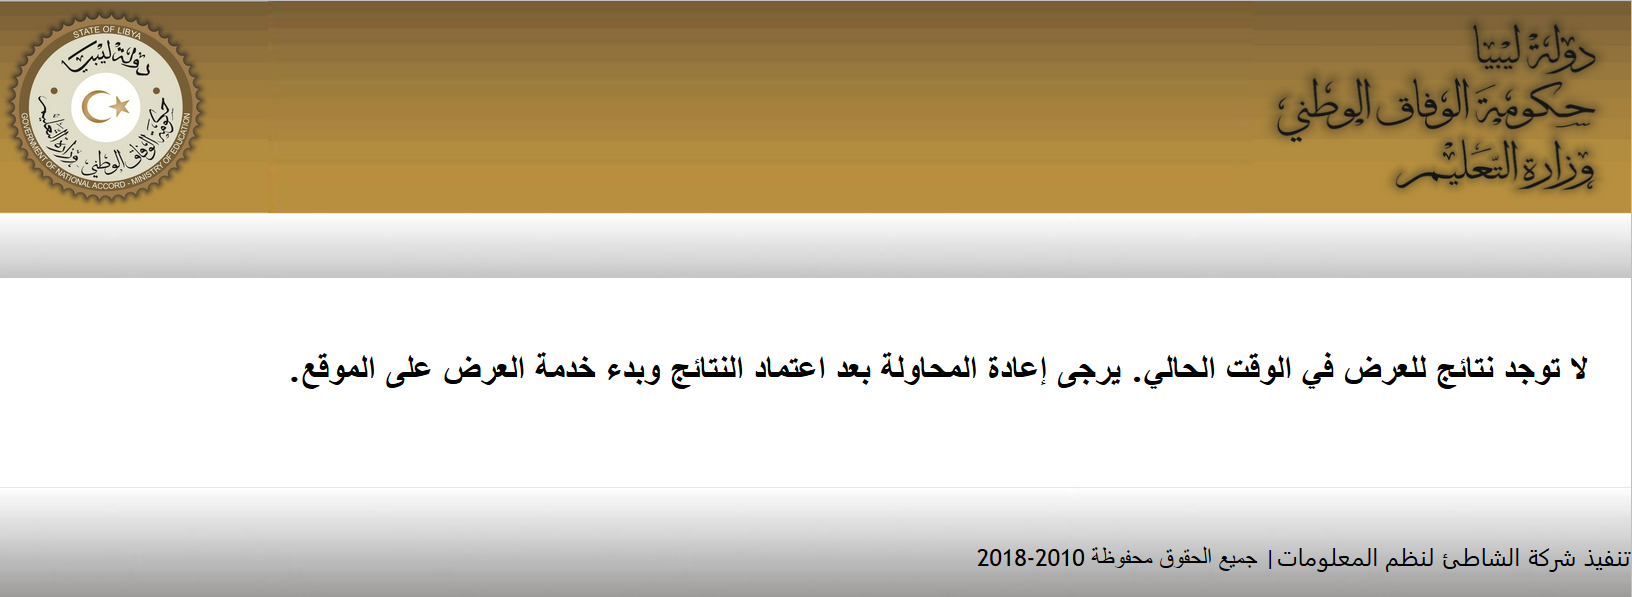 المركز الوطني للامتحانات: رابط إعلان نتيجة الشهادة الإعدادية ليبيا 2019 بالمنطقة الغربية